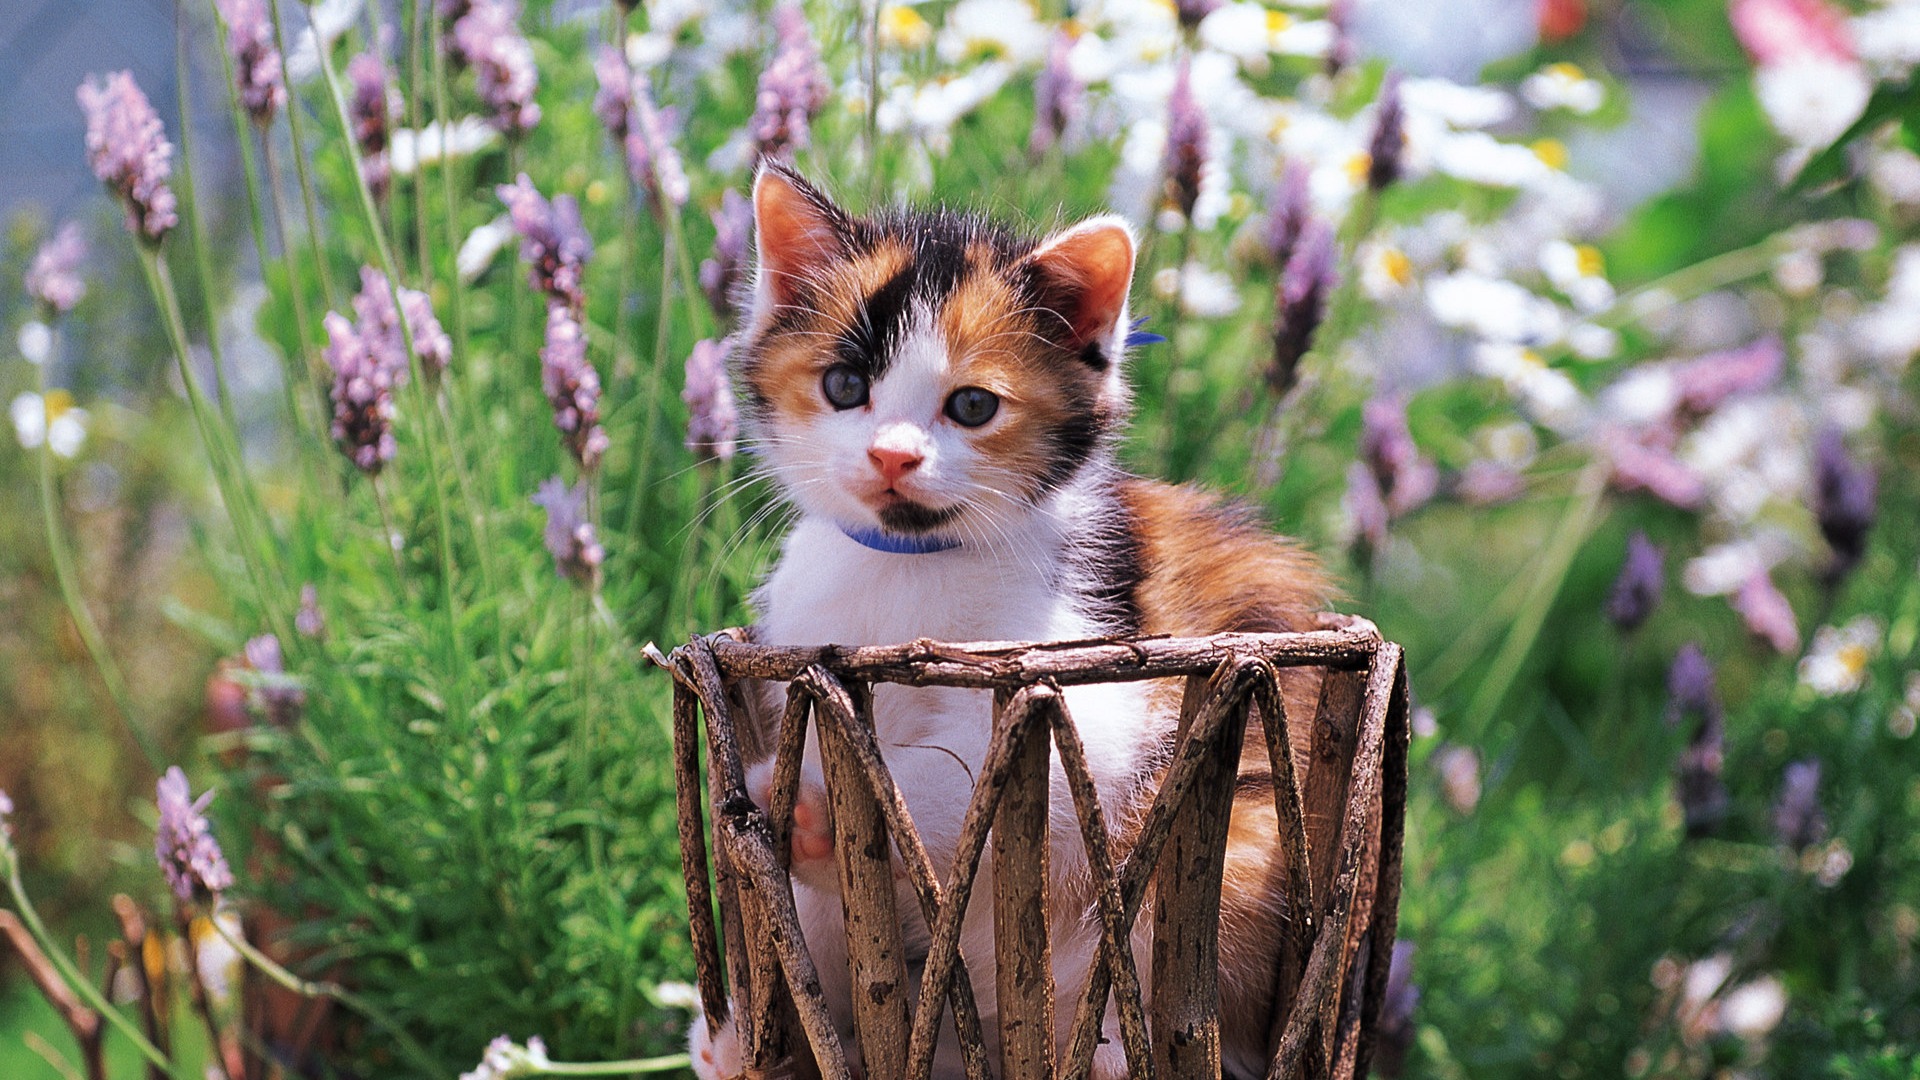 Little kitten in basket